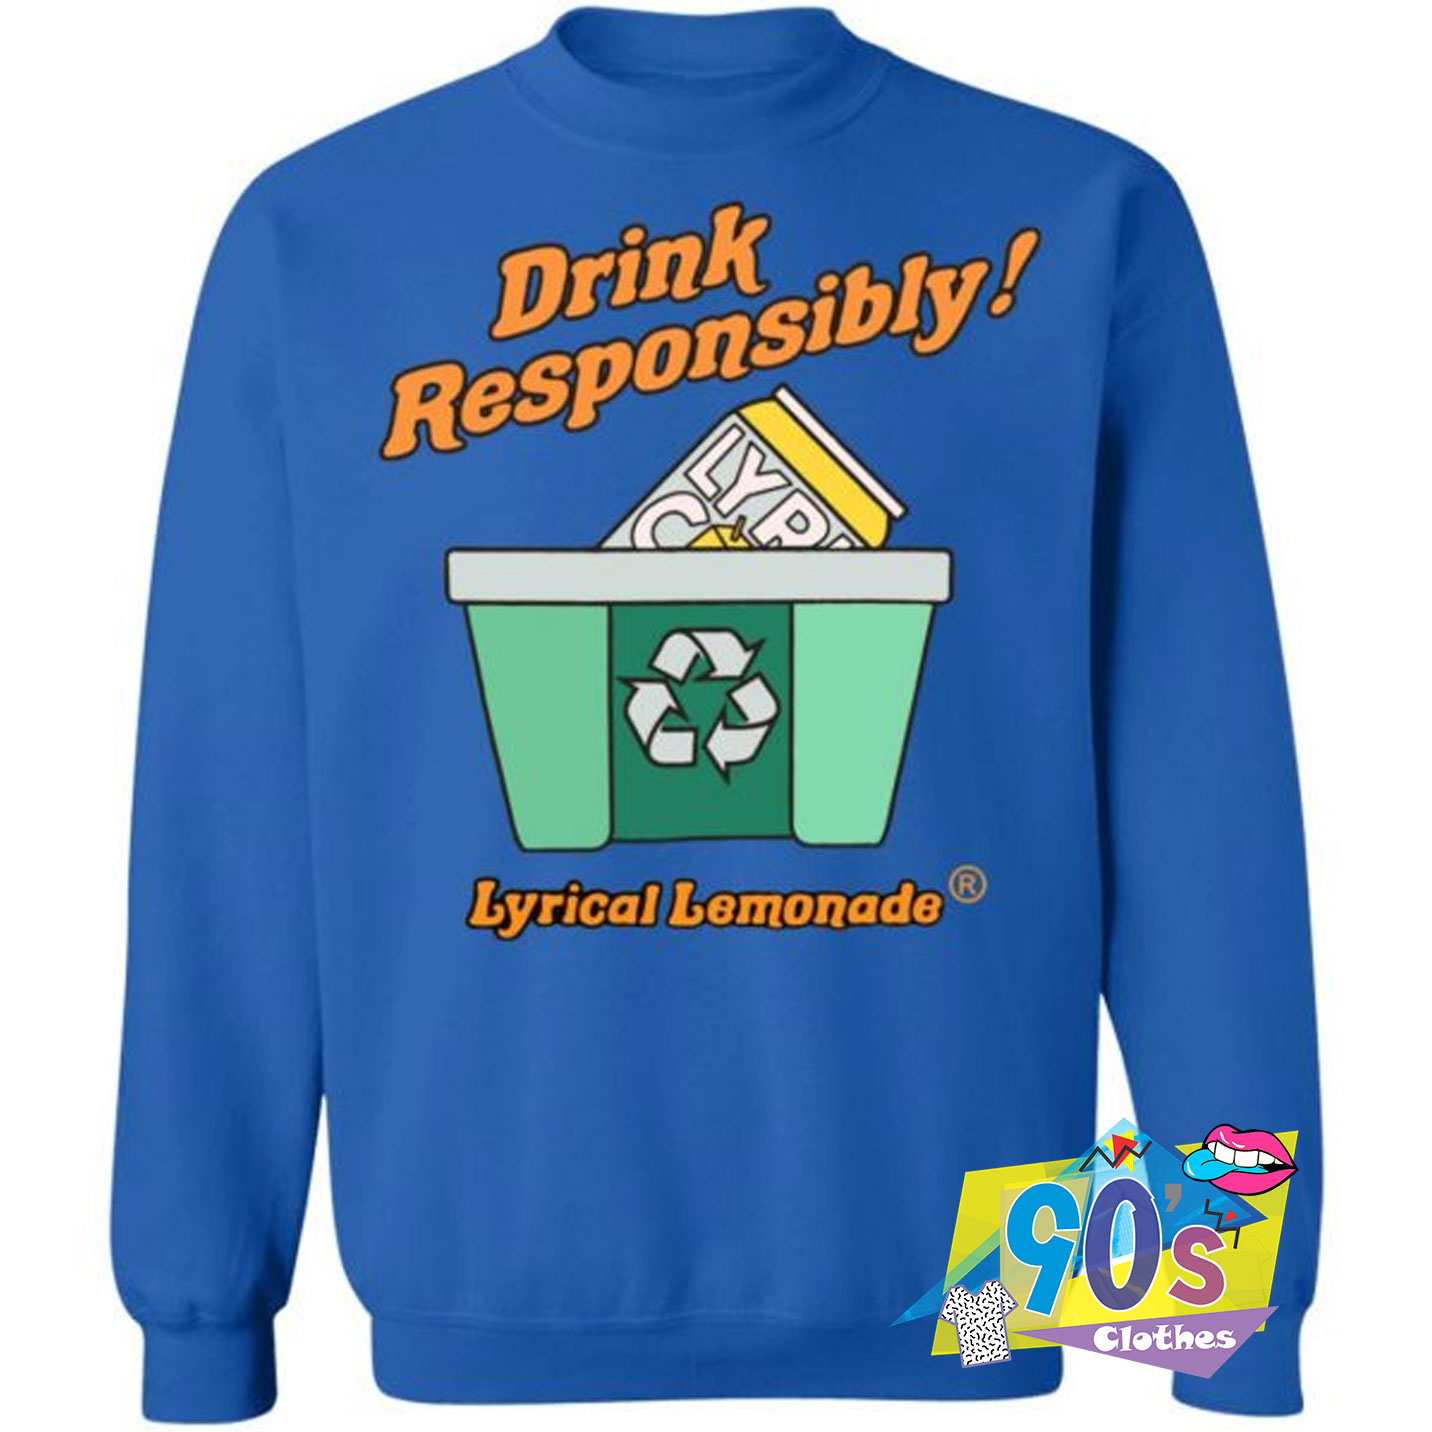 lyrical lemonade hoodie uk